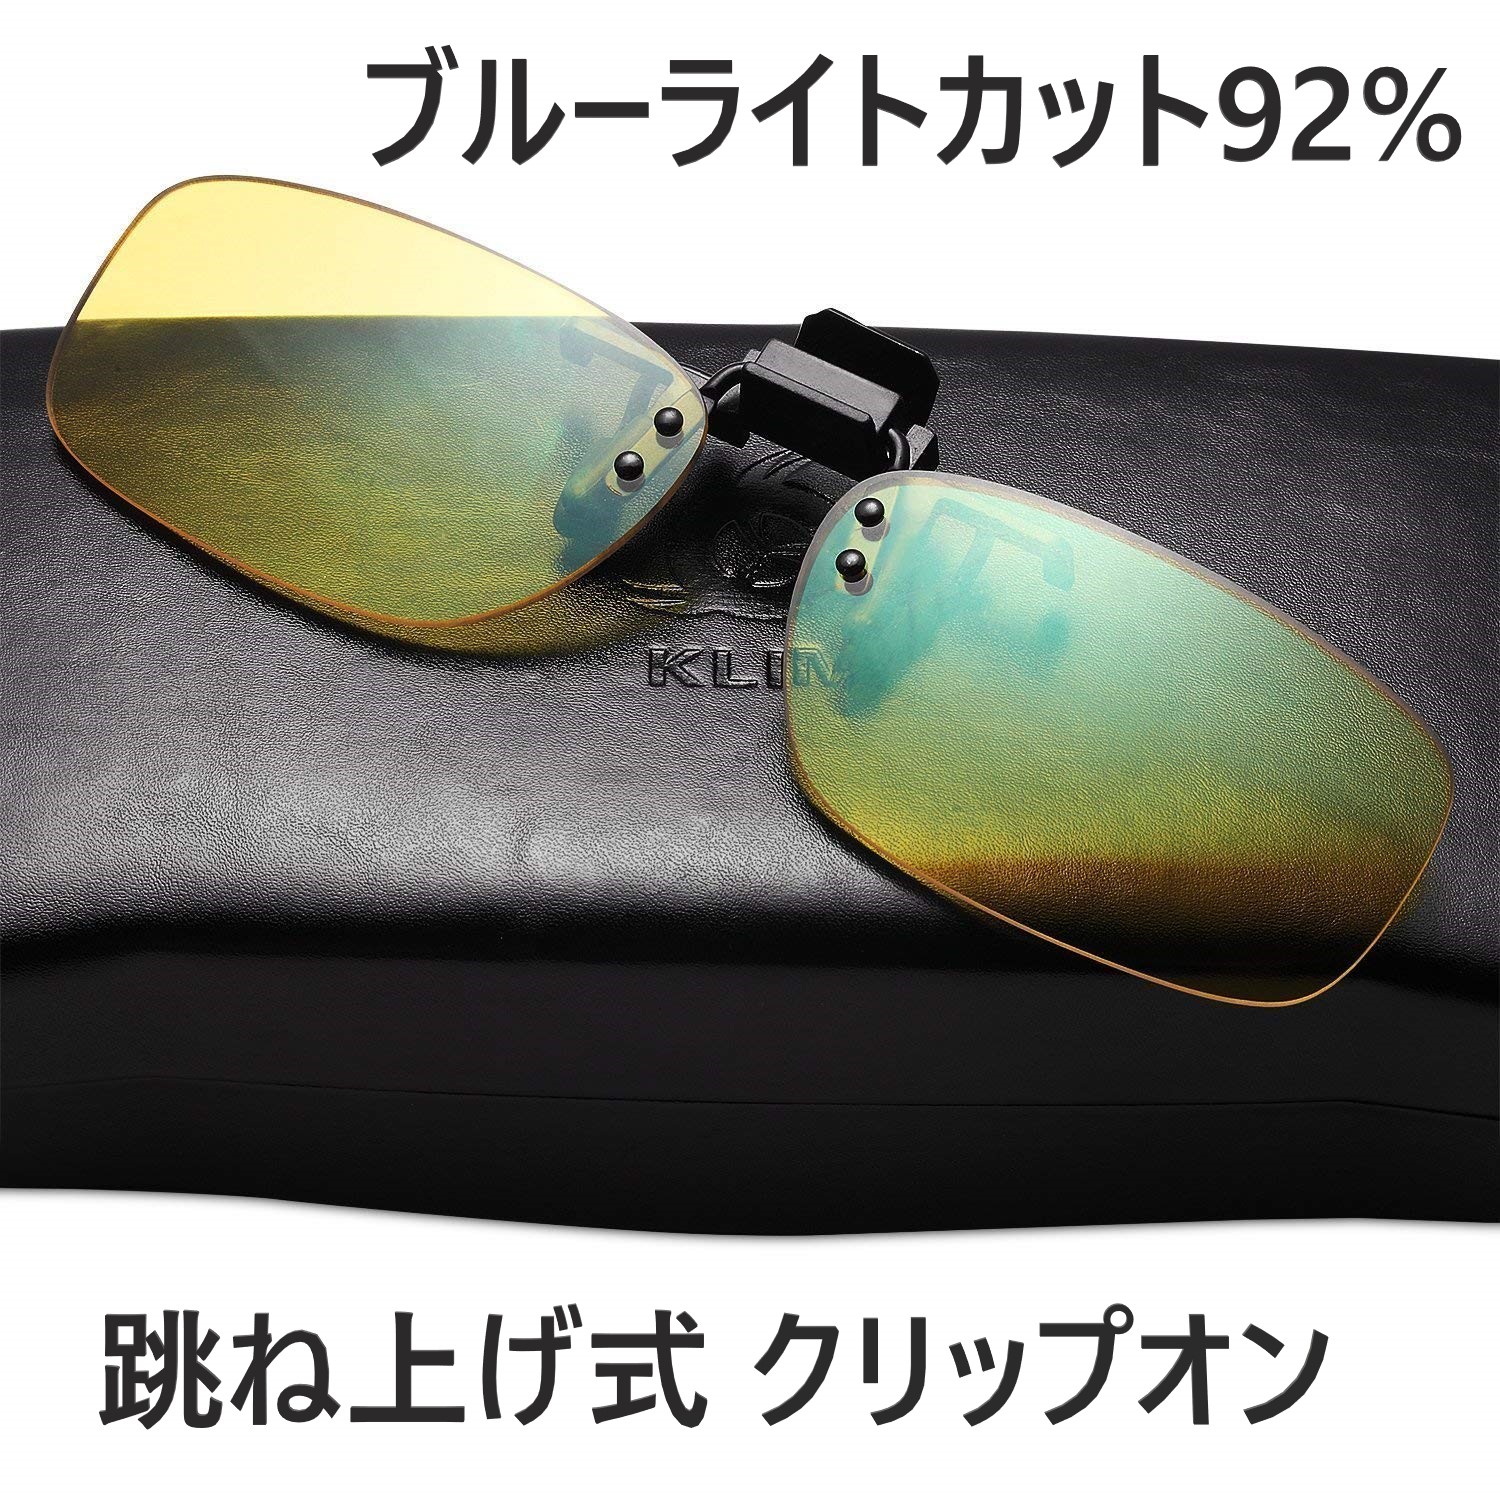 KLIM 人気アイテム ブルーライトカット メガネ クリップ式 青色光カット OTG ゲームメガネ クリップオン 日本に pcメガネ 92%